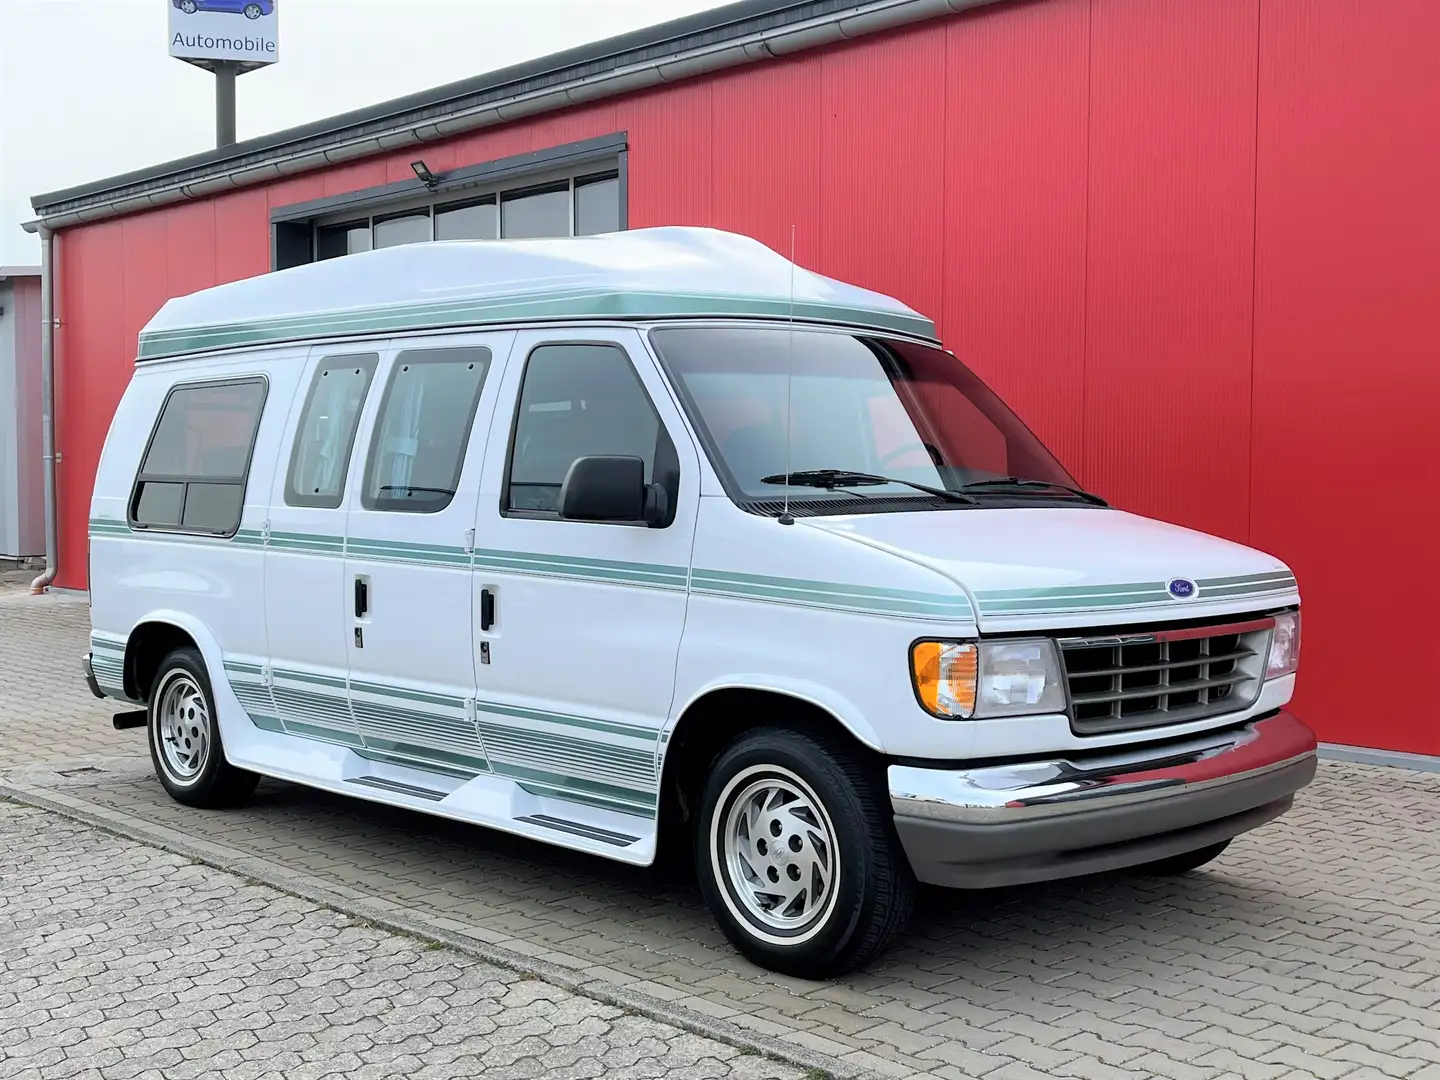 Ford Econoline E-150 Van, org. 64300 km, wie neu, 2.Hand,Garantie Alb - 1